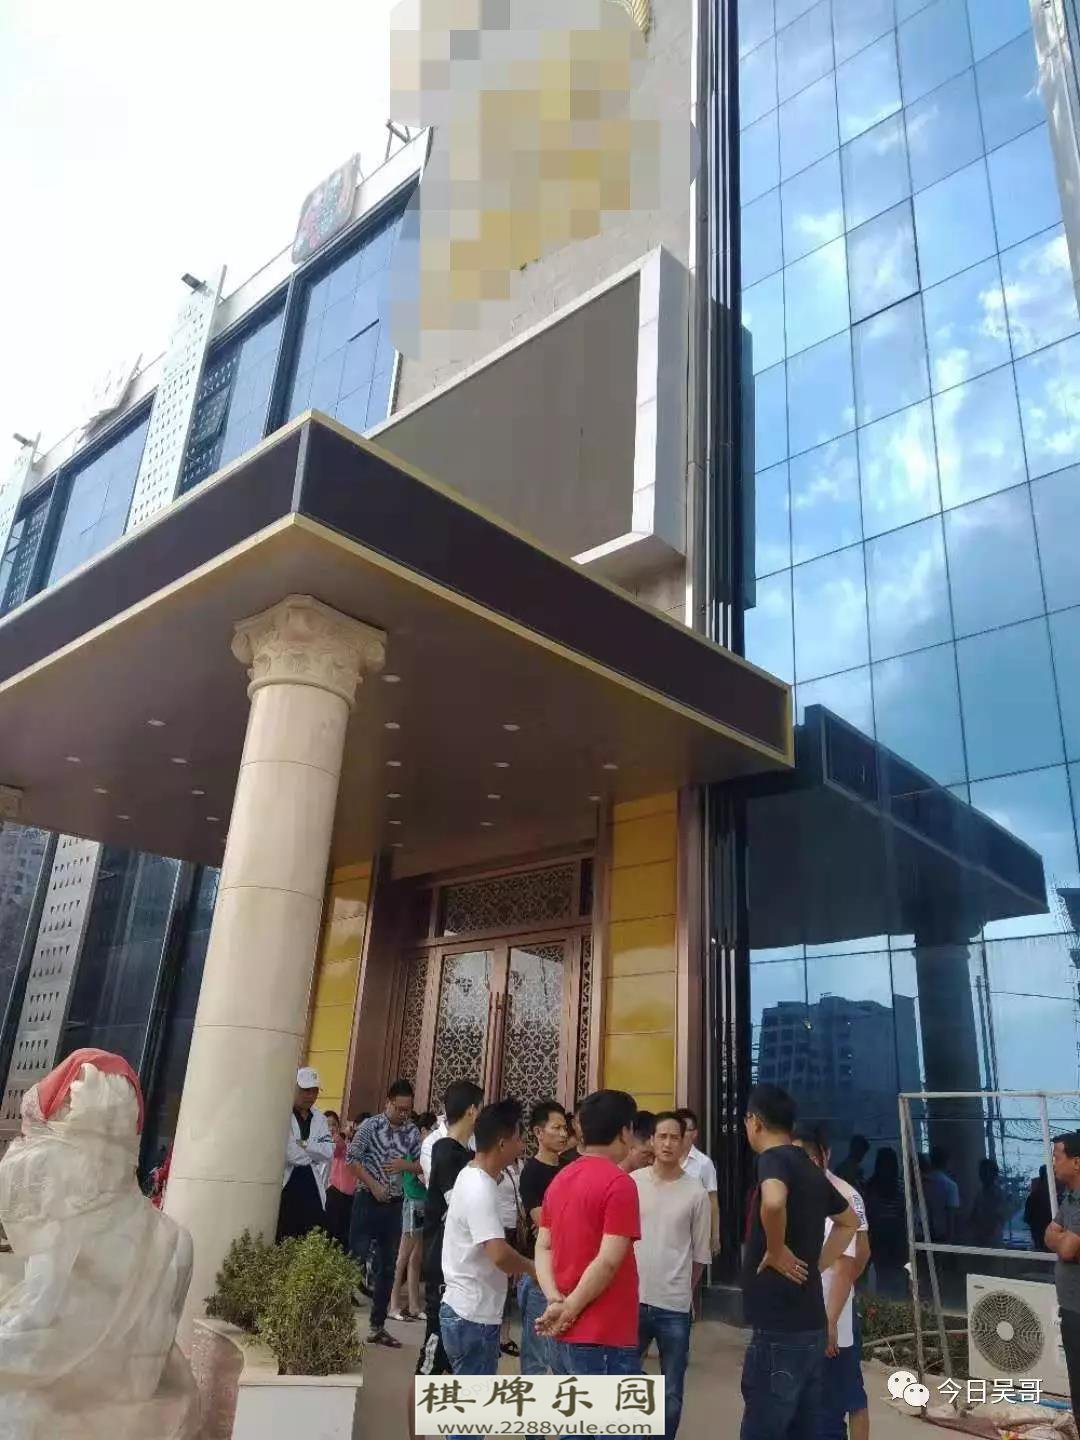 赌场只给柬籍员工结薪中国员工讨薪抗议